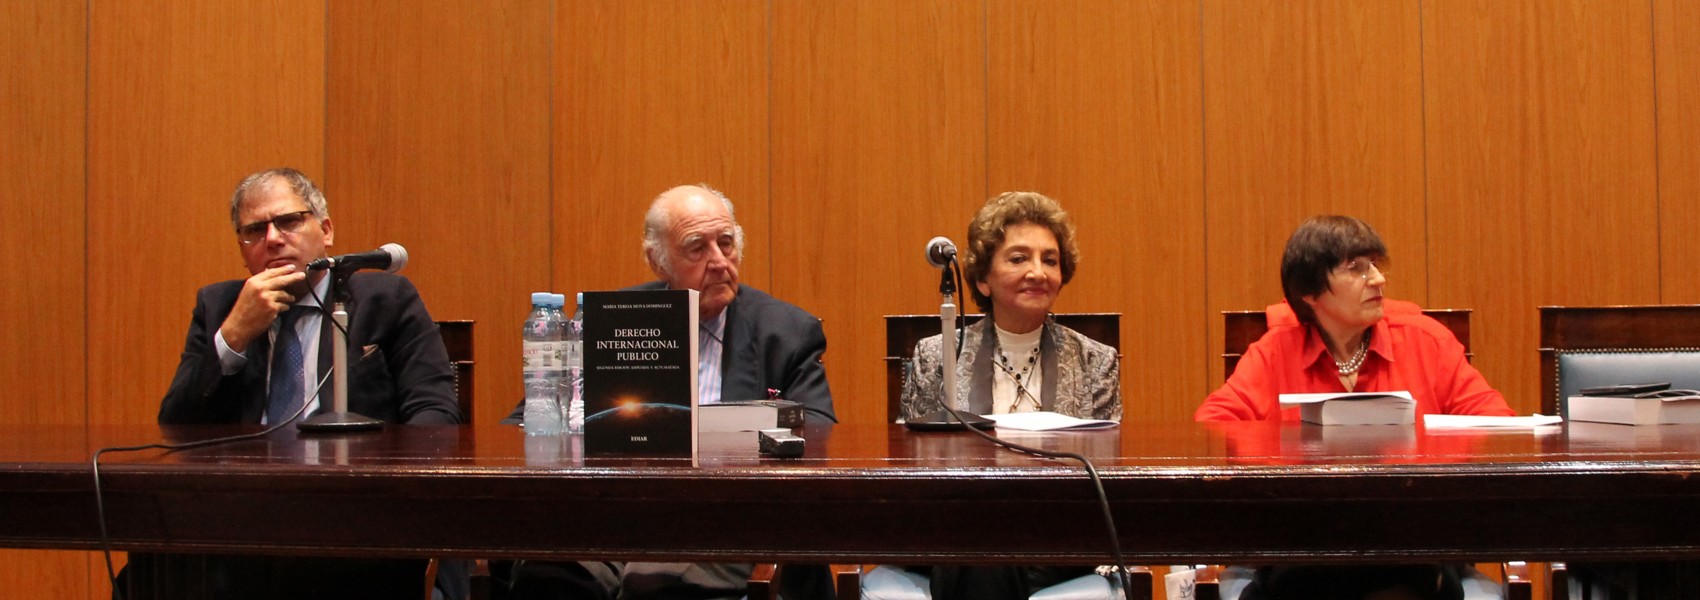 Calogero Pizzolo, Juan Antonio Travieso, Mara Teresa Moya Domnguez y Lilian del Castillo Laborde